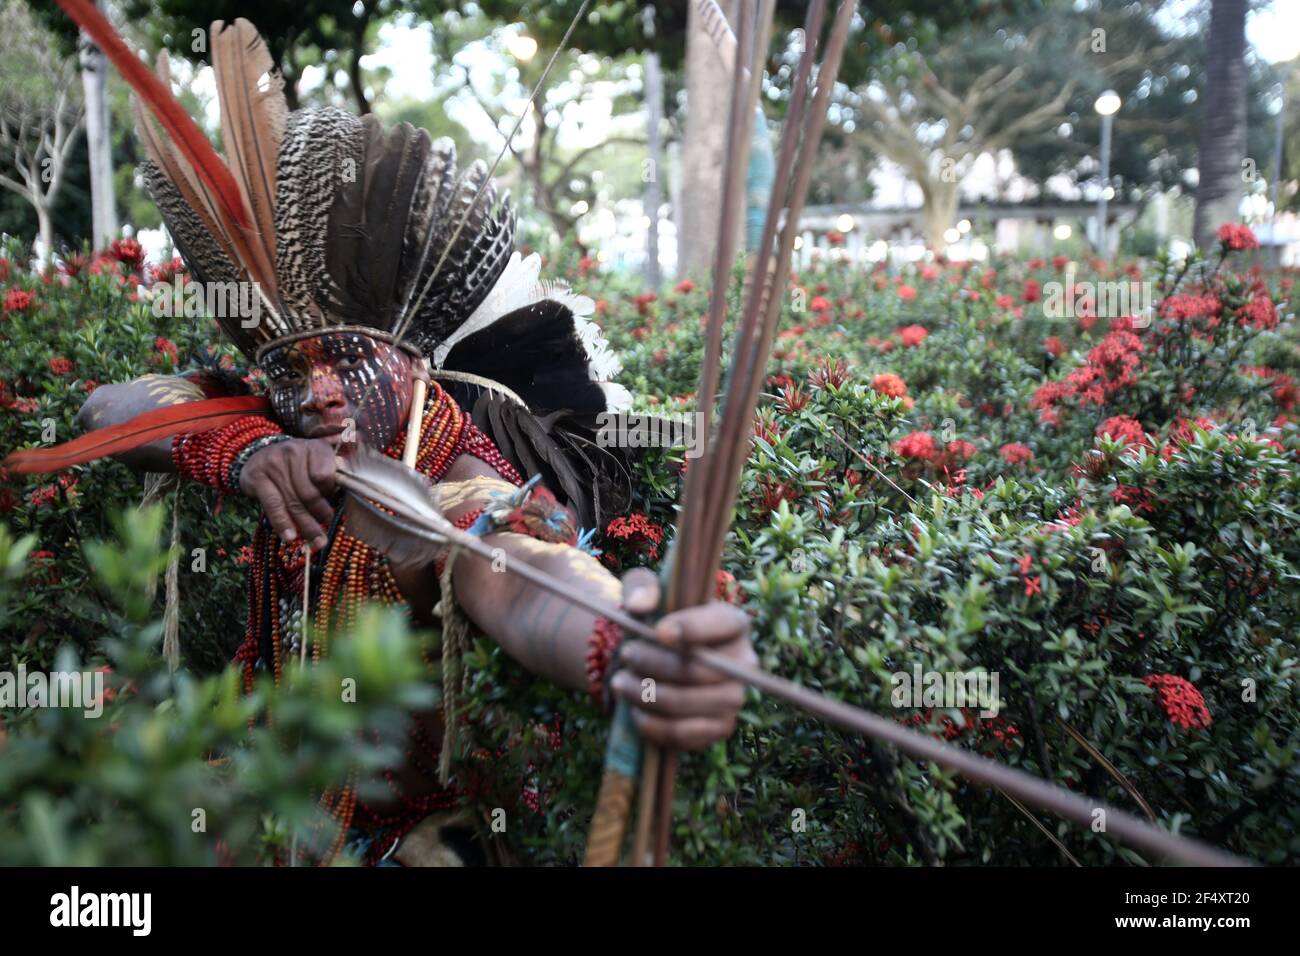 salvador, bahia / brésil - 7 mai 2019: Autochtones de la tribu Bahia sont vus pendant pour débattre de la conjoncture politique et exiger la démarcation des autochtones Banque D'Images